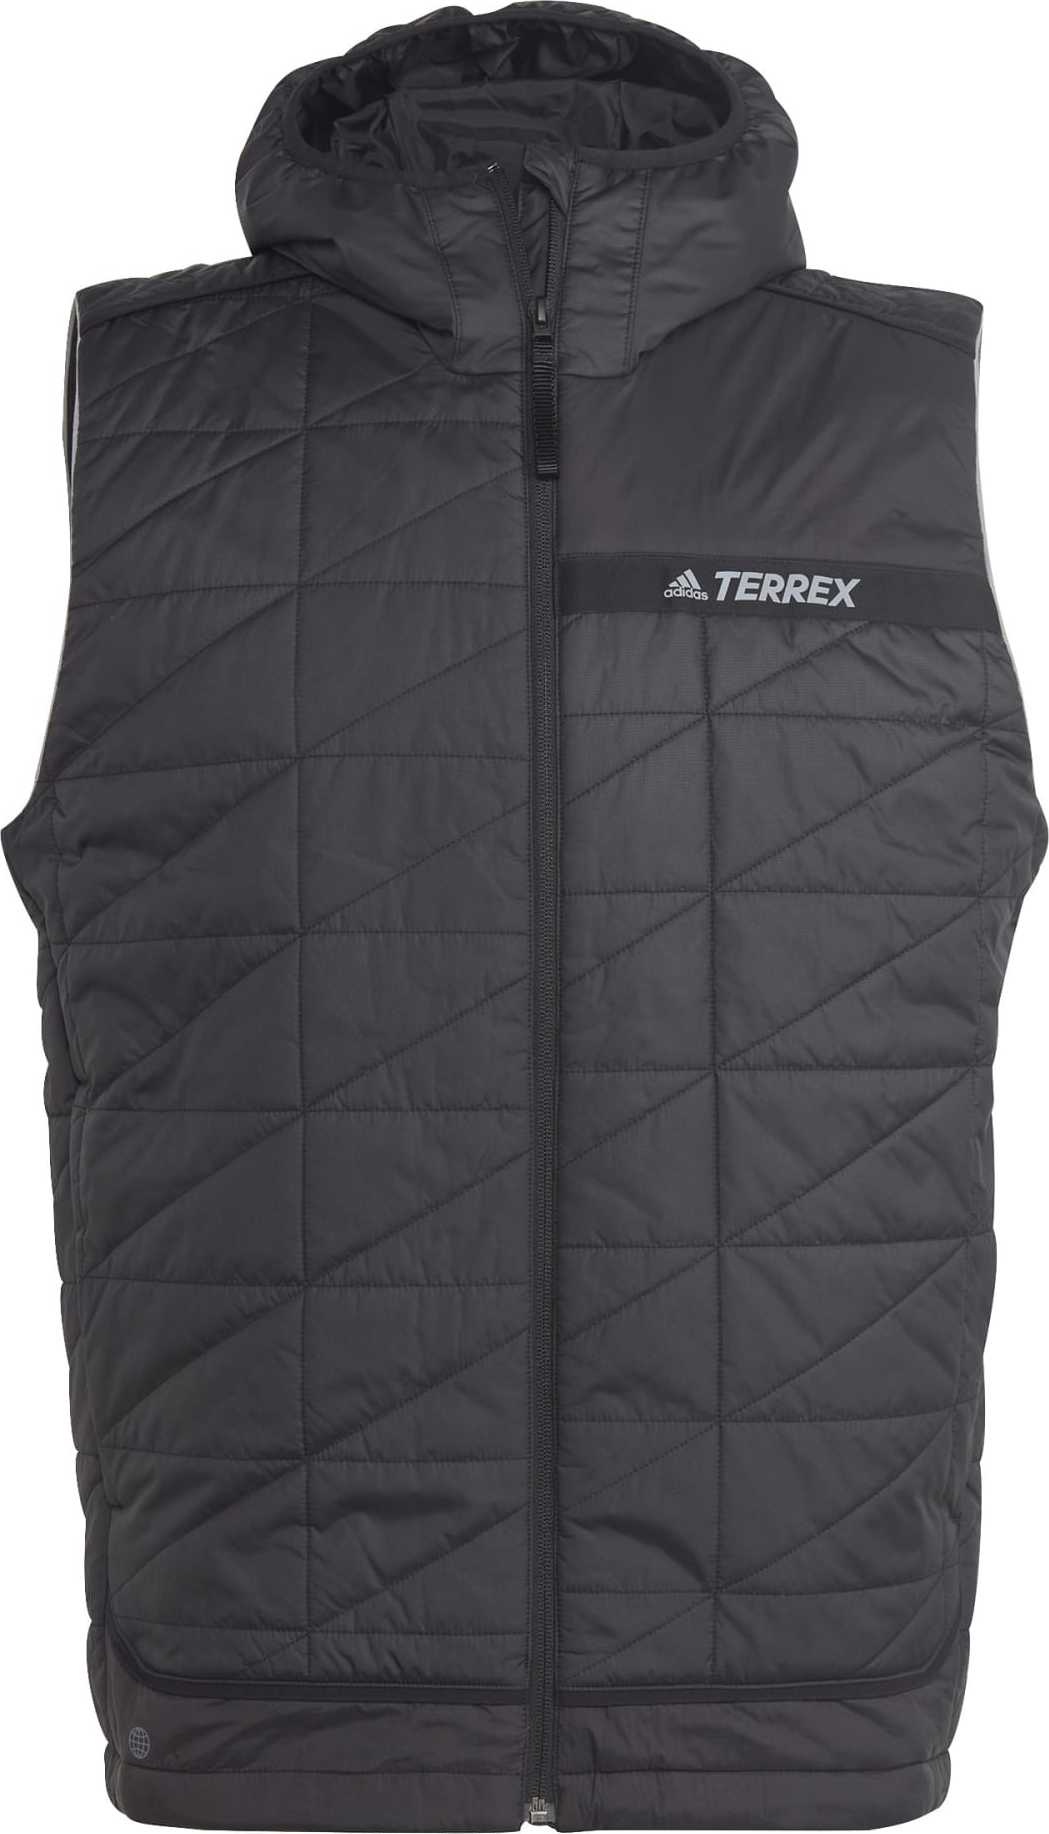 Adidas Men’s Terrex Multi Insulated Vest Black